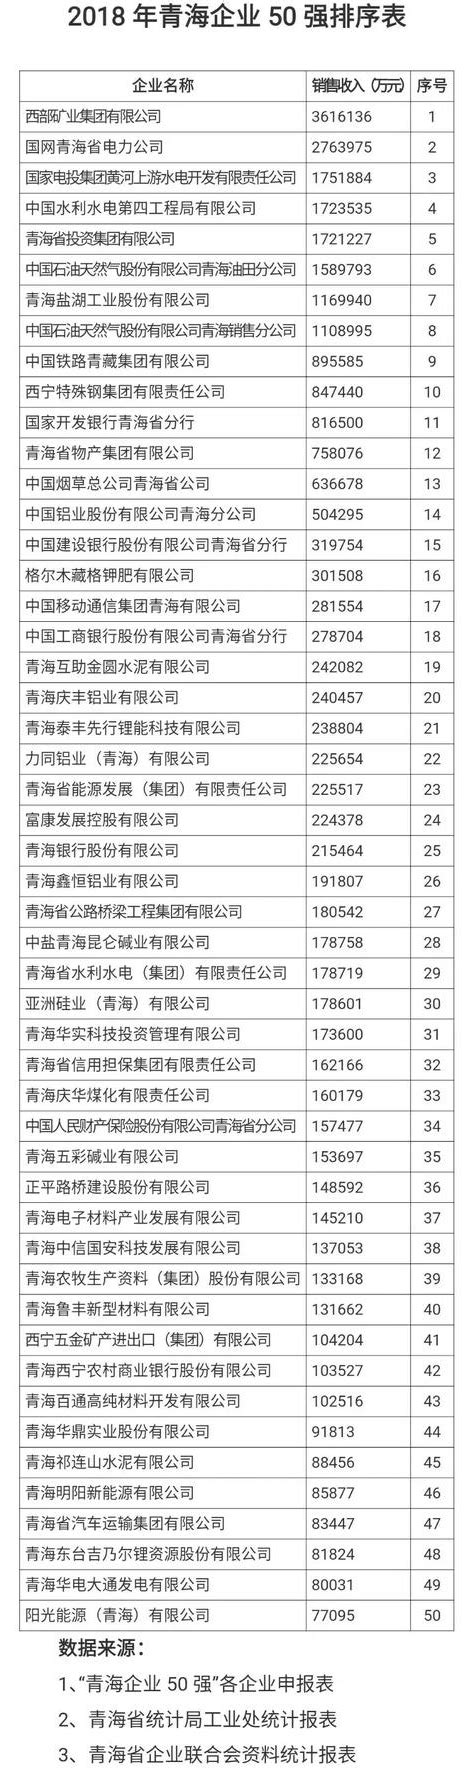 2018年青海省企业50强榜单_排名